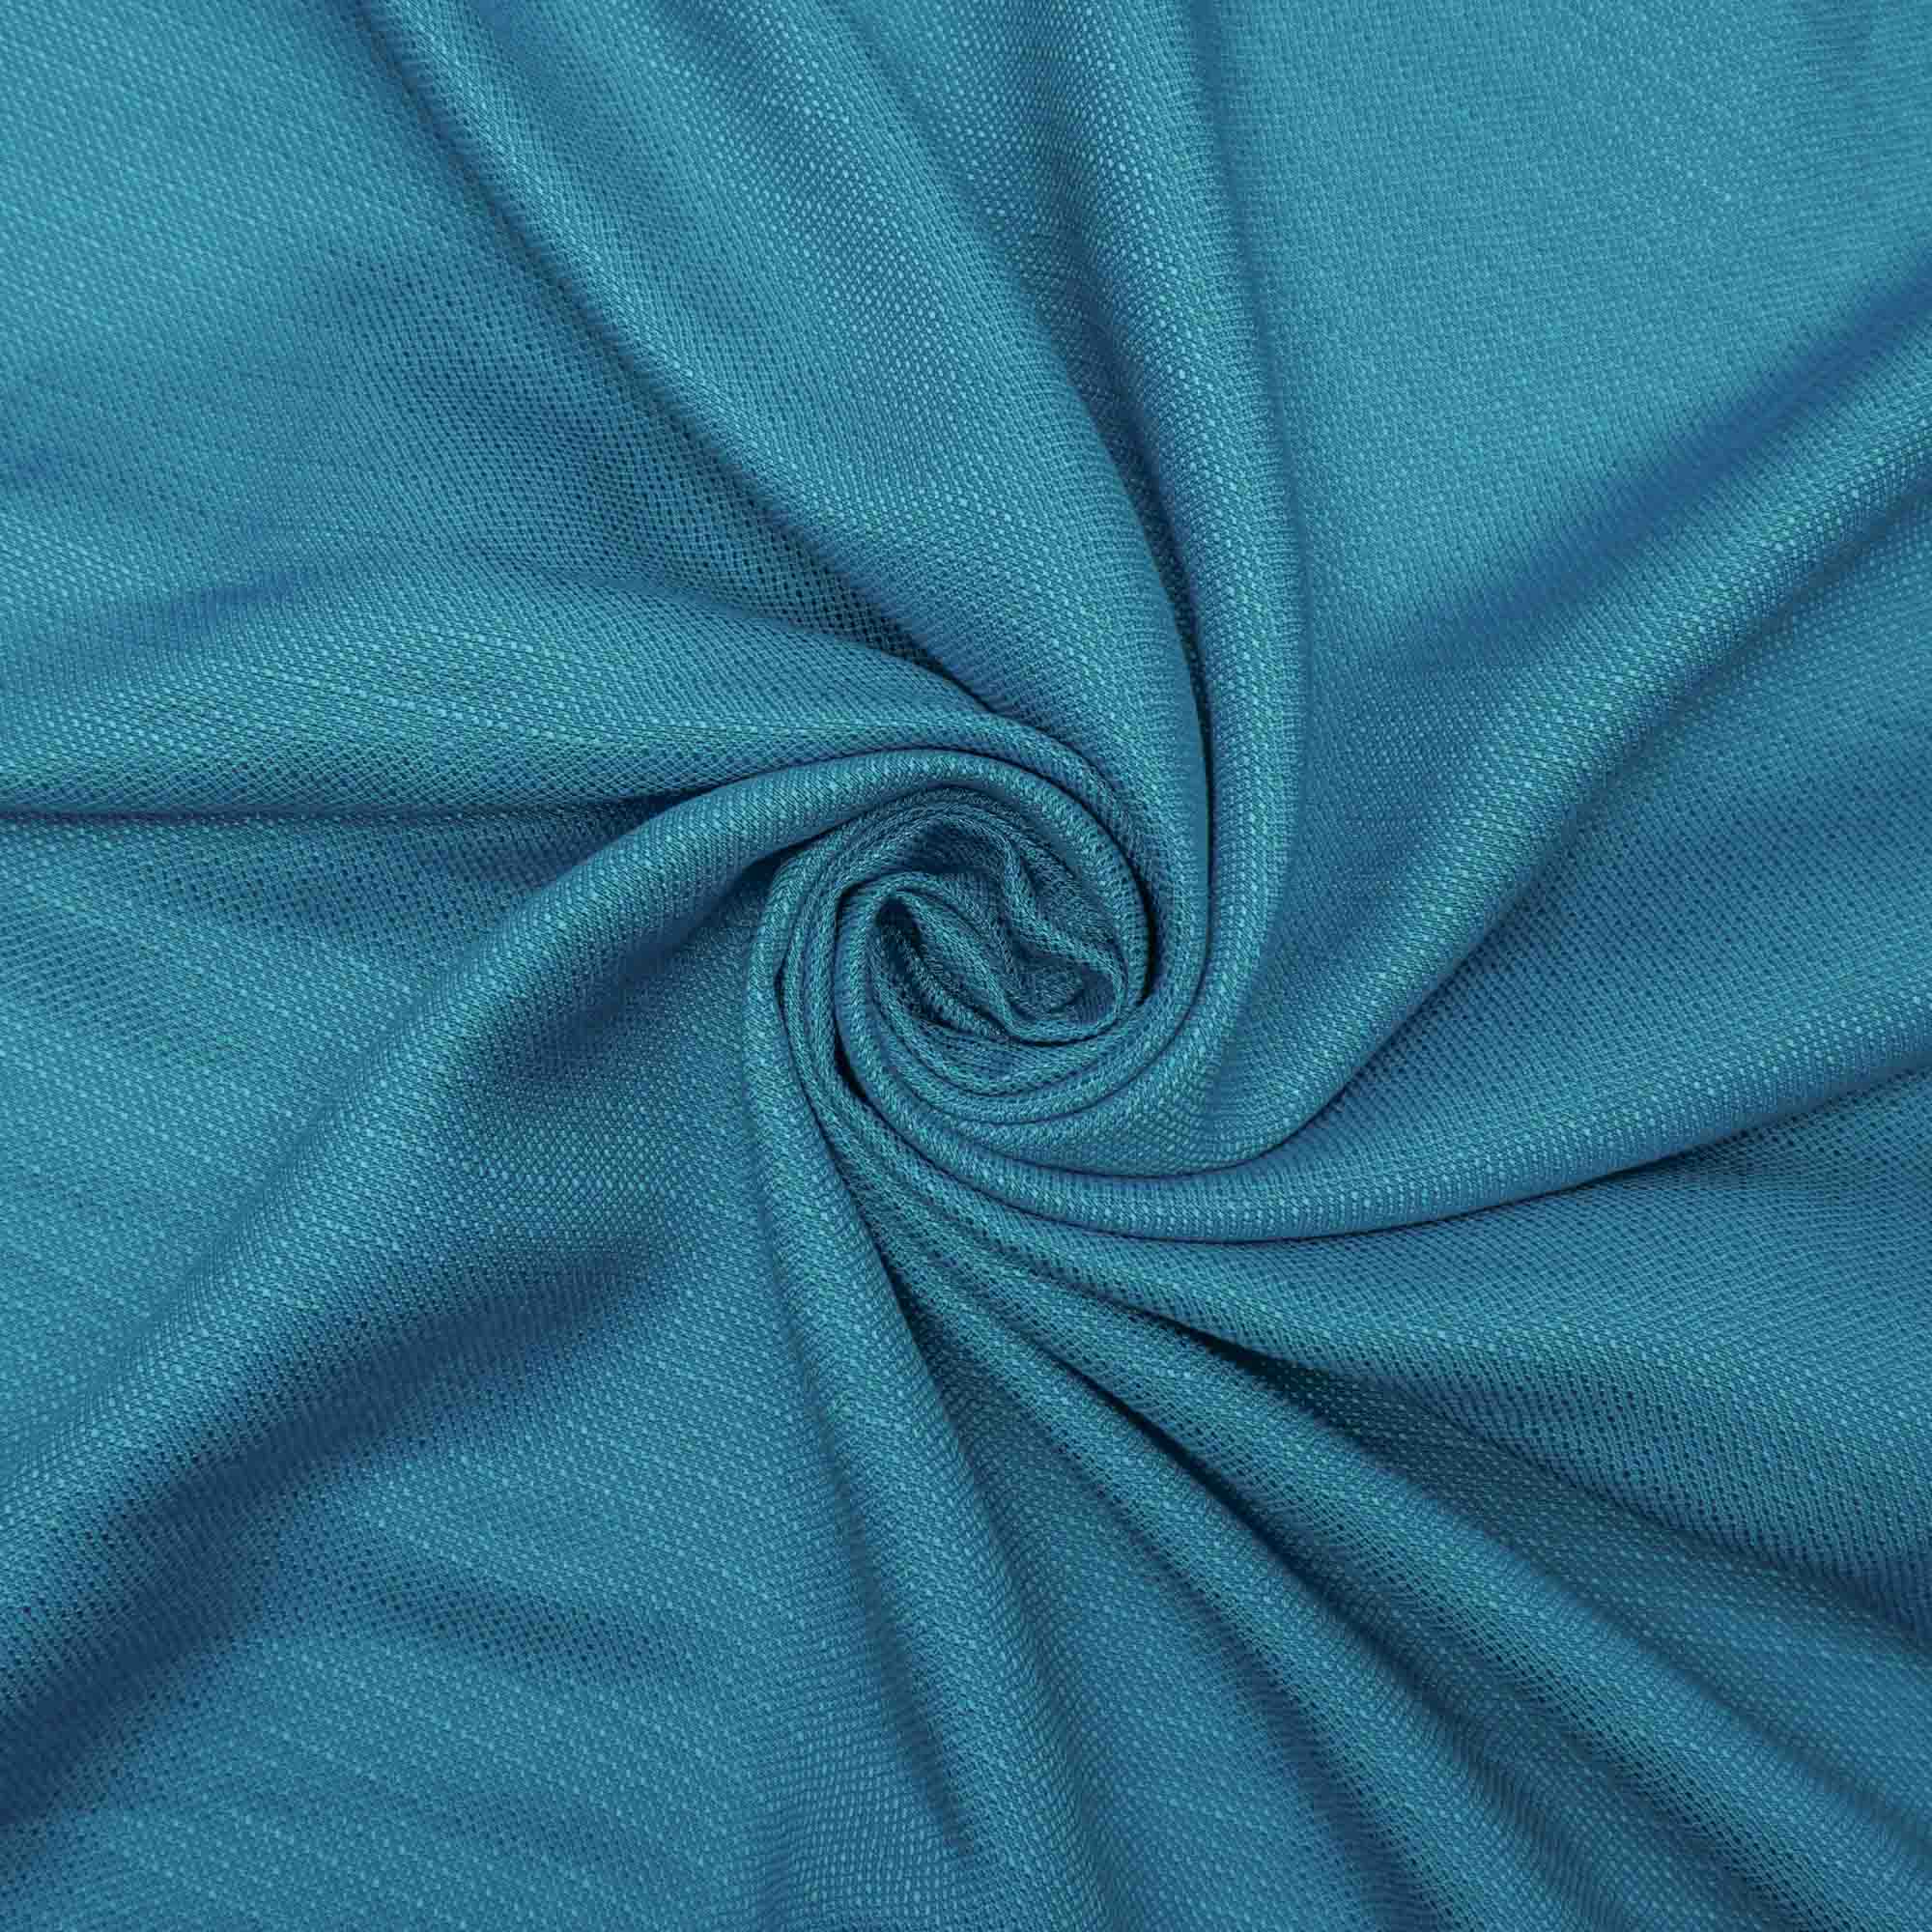 Tecido linho misto azul turquesa (tecido italiano legítimo)